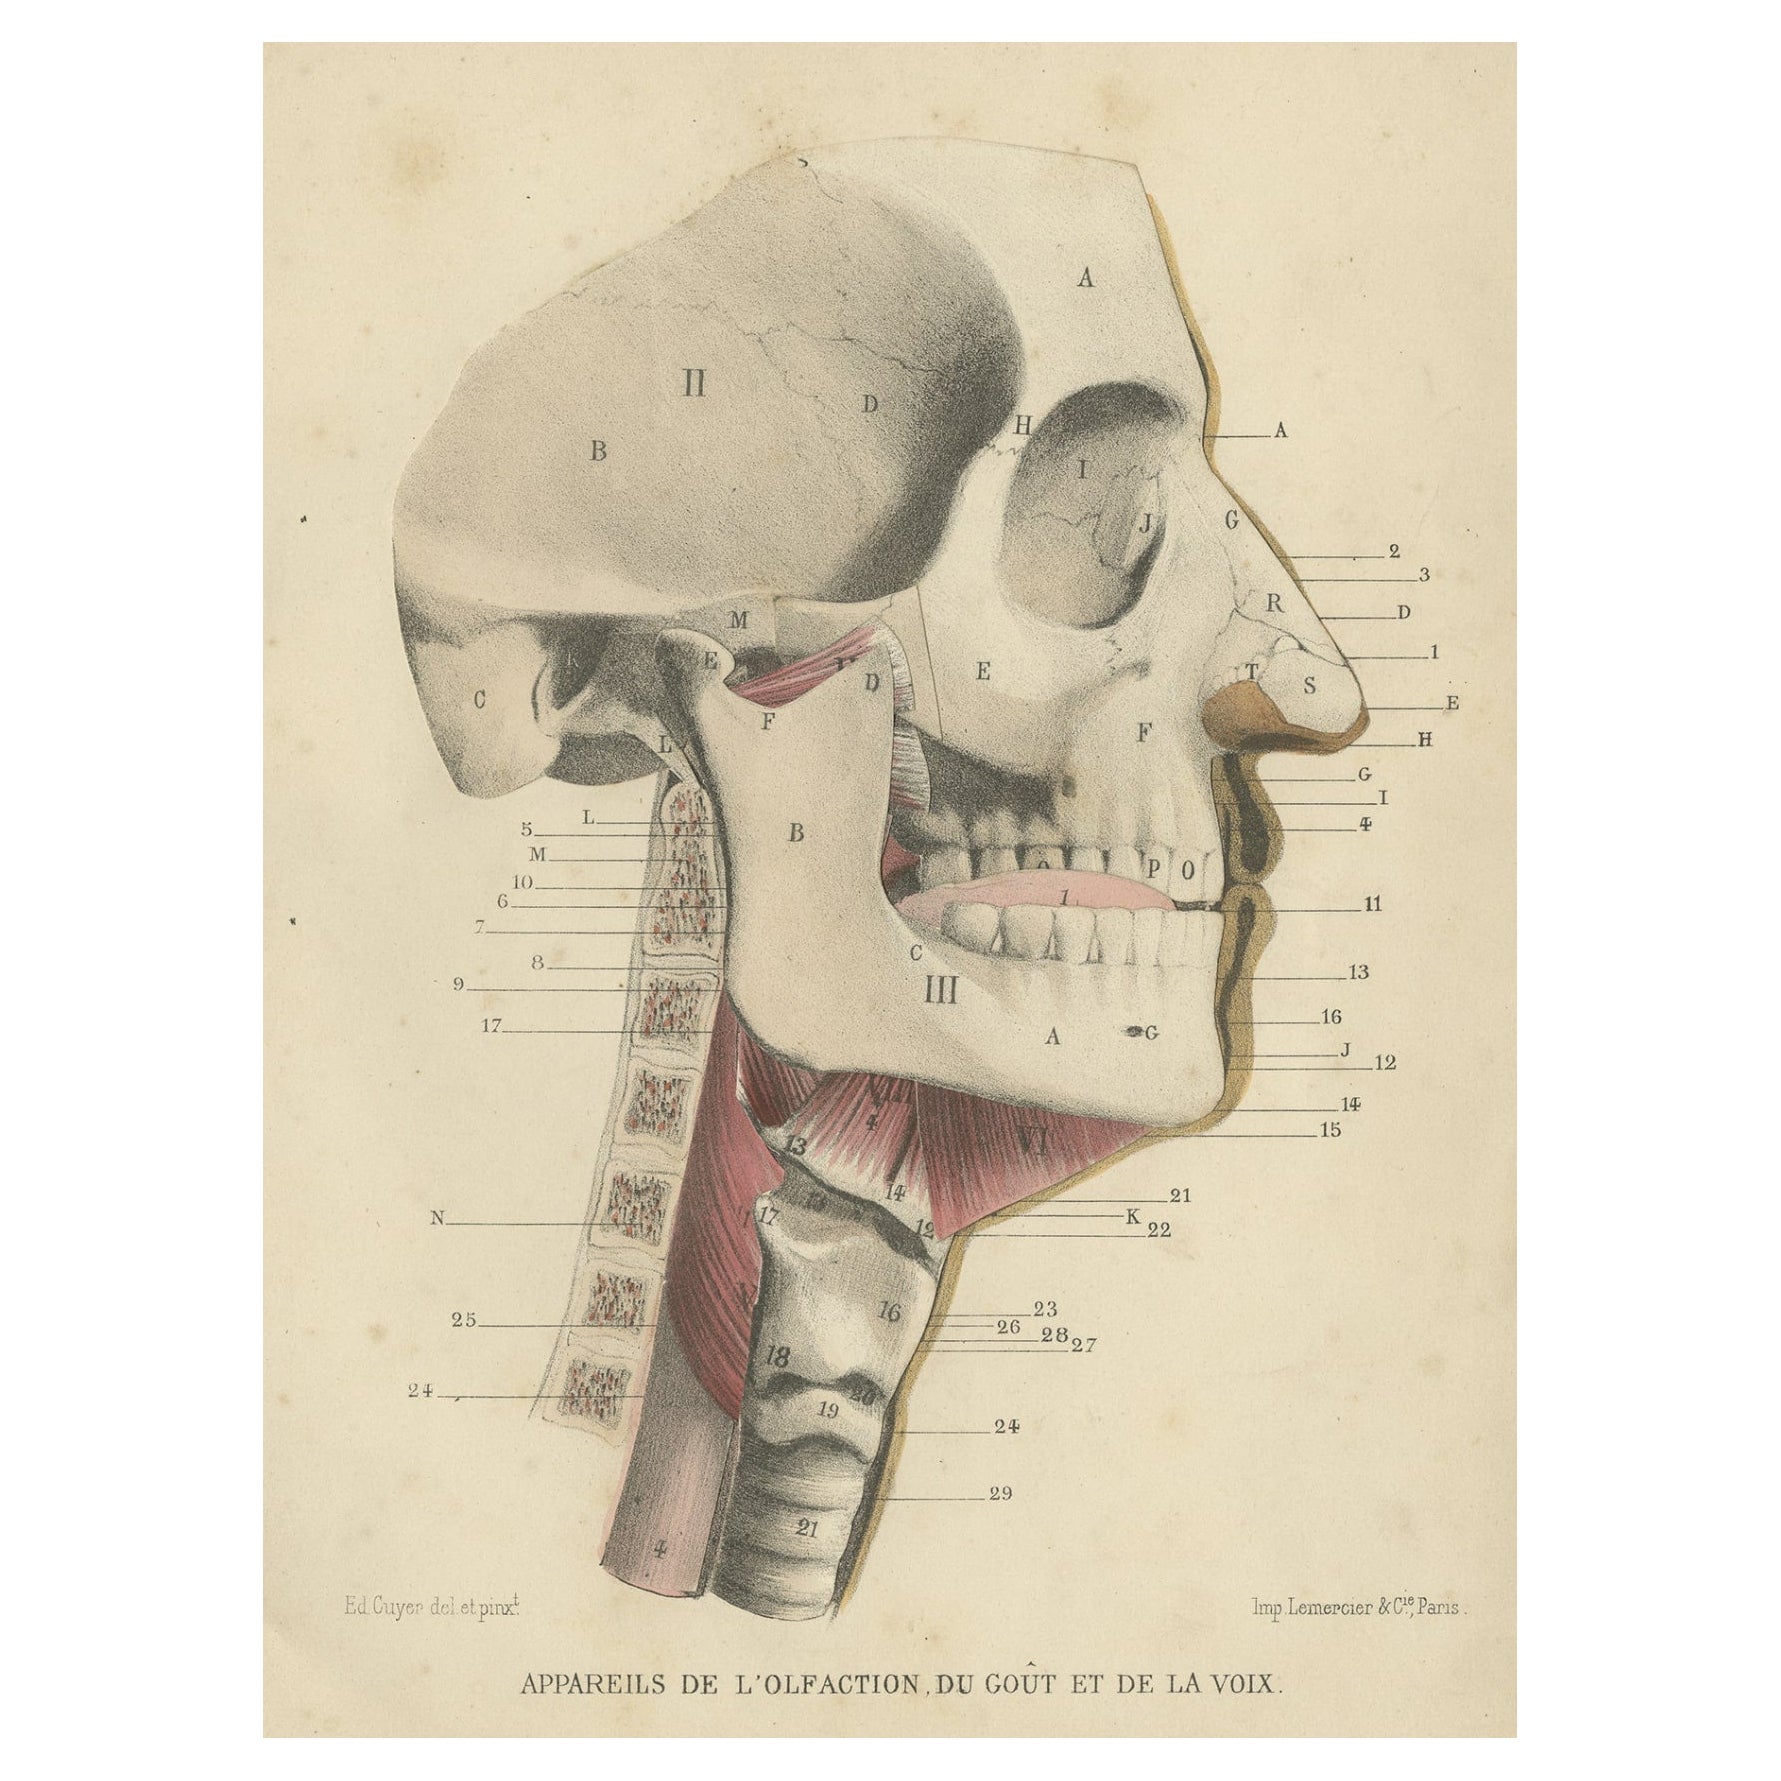 Antique Medical Print of Human Senses, 1879